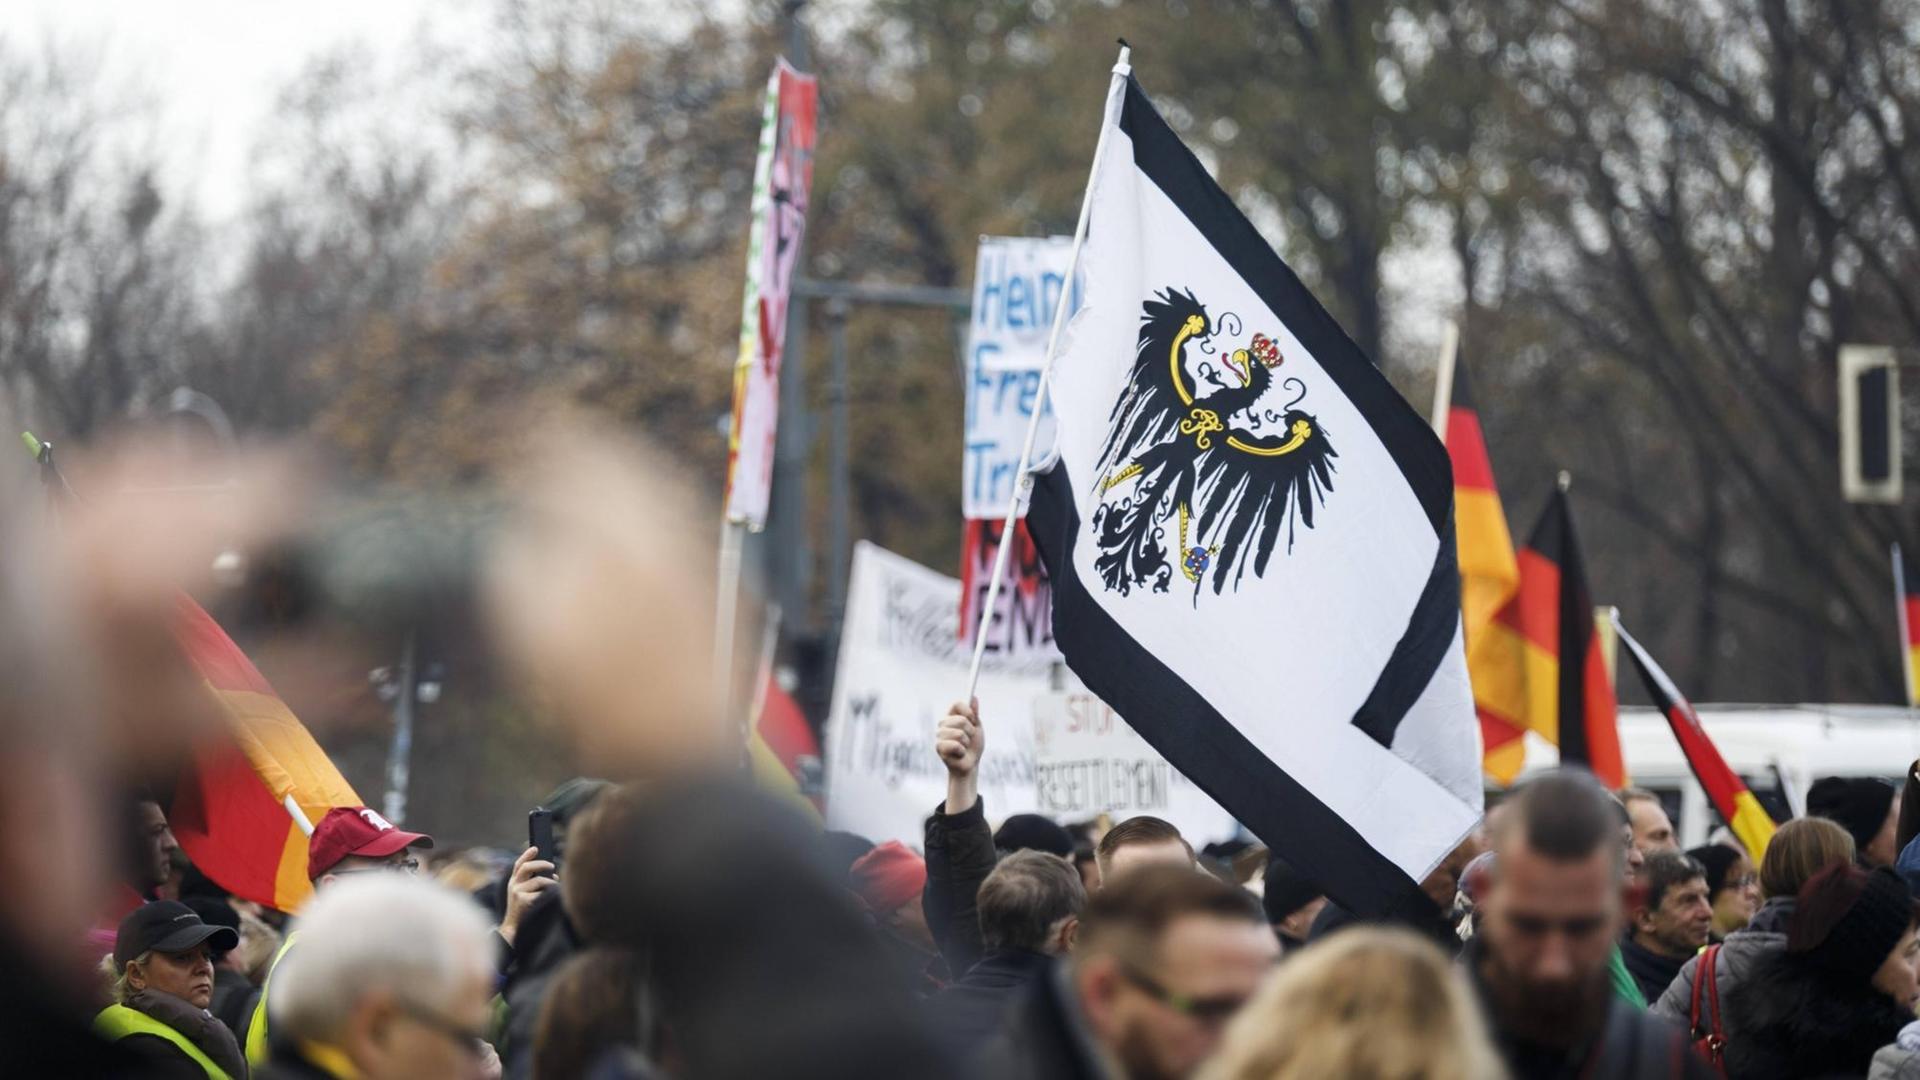 Kundgebung gegen den UN-Migrationspakt am 1.12.2018 in Berlin: Die Demonstranten schwenken Deutschlandfahnen und Transparente.